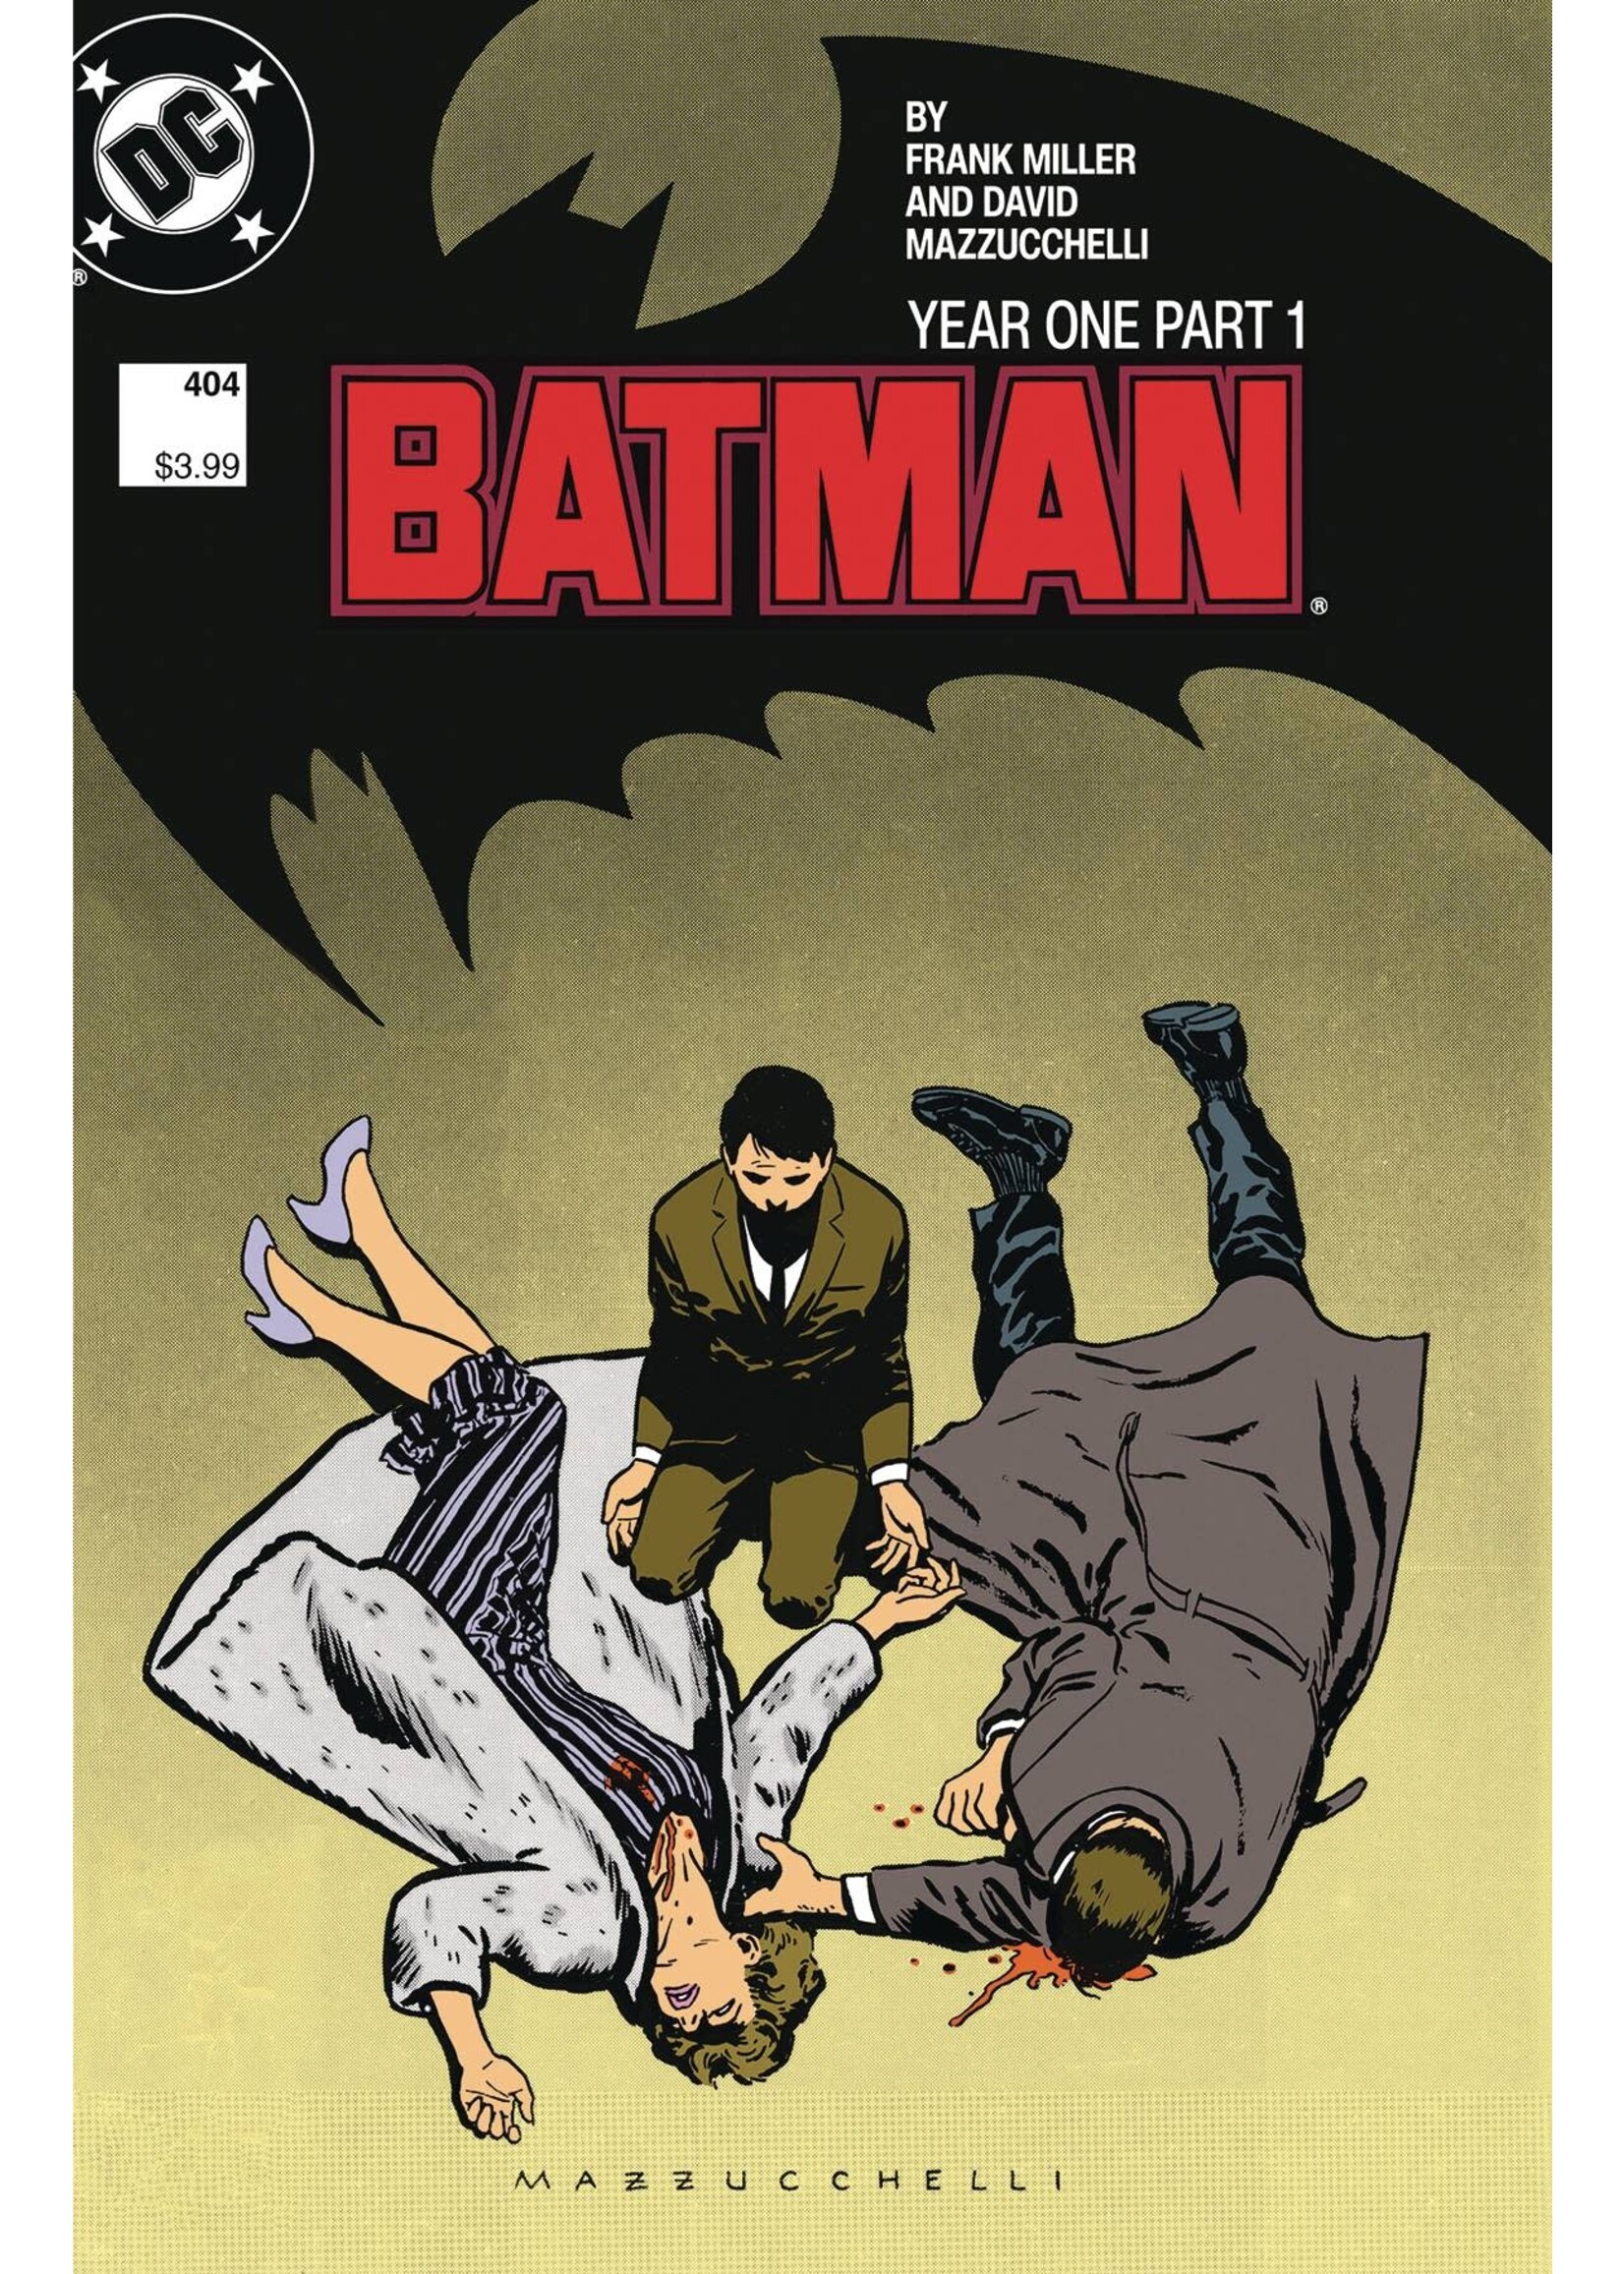 DC COMICS BATMAN #404 FACSIMILE EDITION